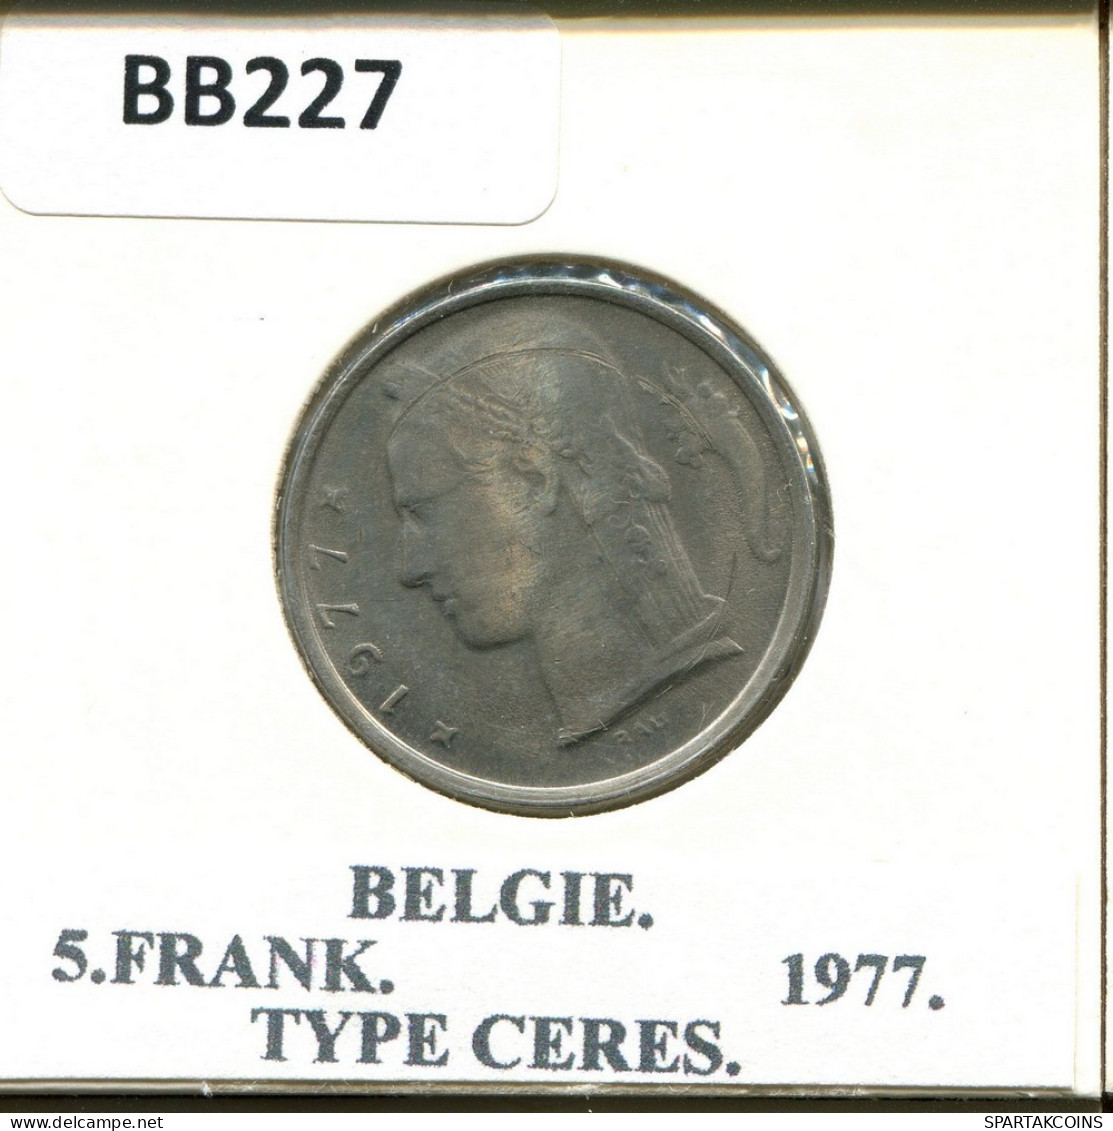 5 FRANCS 1977 DUTCH Text BELGIQUE BELGIUM Pièce #BB227.F.A - 5 Frank